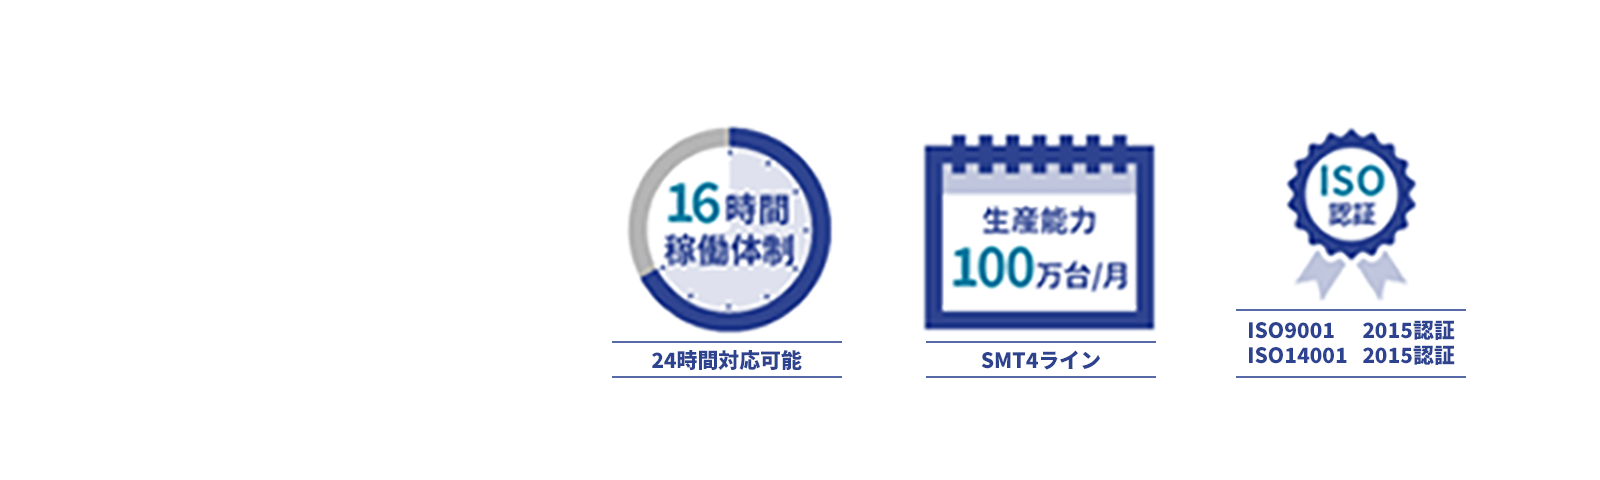 宮城工場 - 24時間対応可能・SMT4ライン・ISO9001:2015認証・ISO14001:2015認証